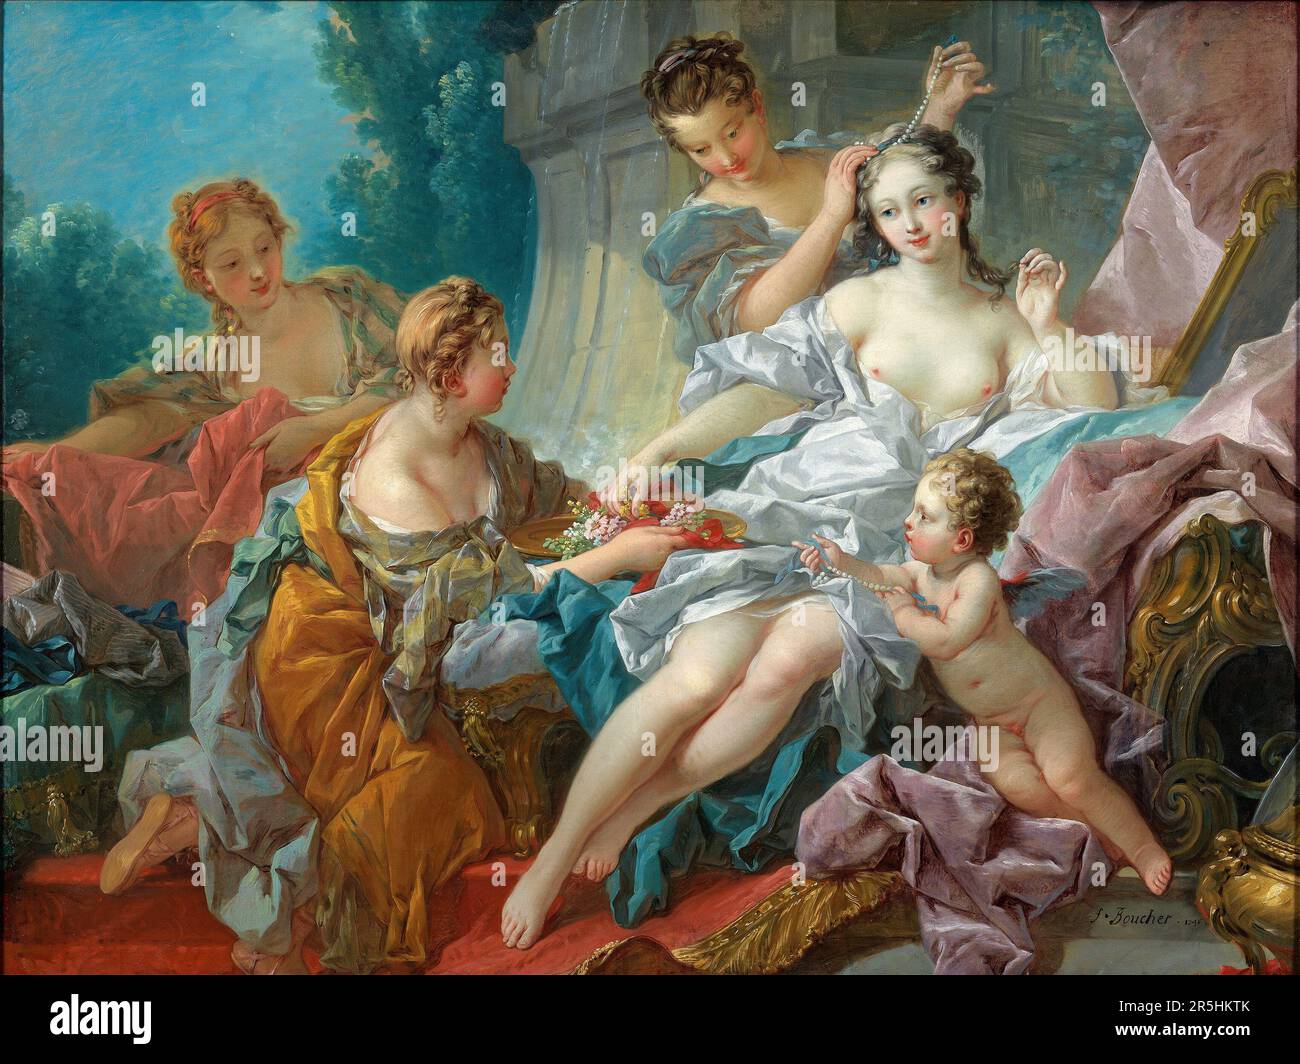 Die Toilette der Venus, gemalt von Francois Bouchard 1751. Obwohl heute kaum bekannt, war Francois Boucher einer der berühmtesten Maler des 18. Jahrhunderts in Frankreich. Er malte klassische Themen im Barock- und Rokoko-Stil. Seine Schirmherrin war Madame de Pompadour, und sein Werk war so beliebt, dass er schließlich Premier Peintre du ROI (erster Maler des Königs) wurde, ein angesehener Gerichtsstand im Antiker-Regime. Stockfoto